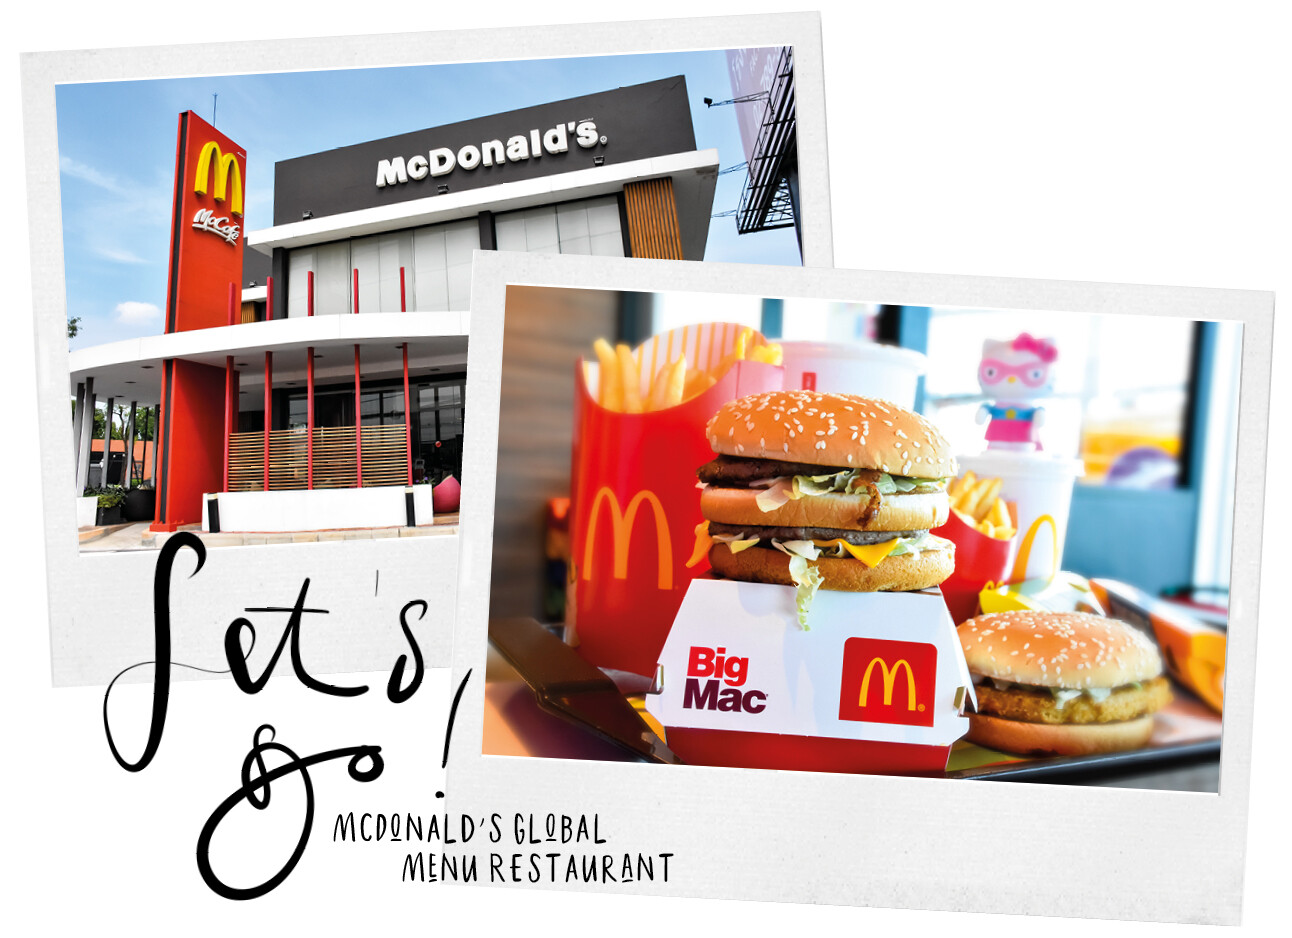 Mcdonalds global menu restaurant